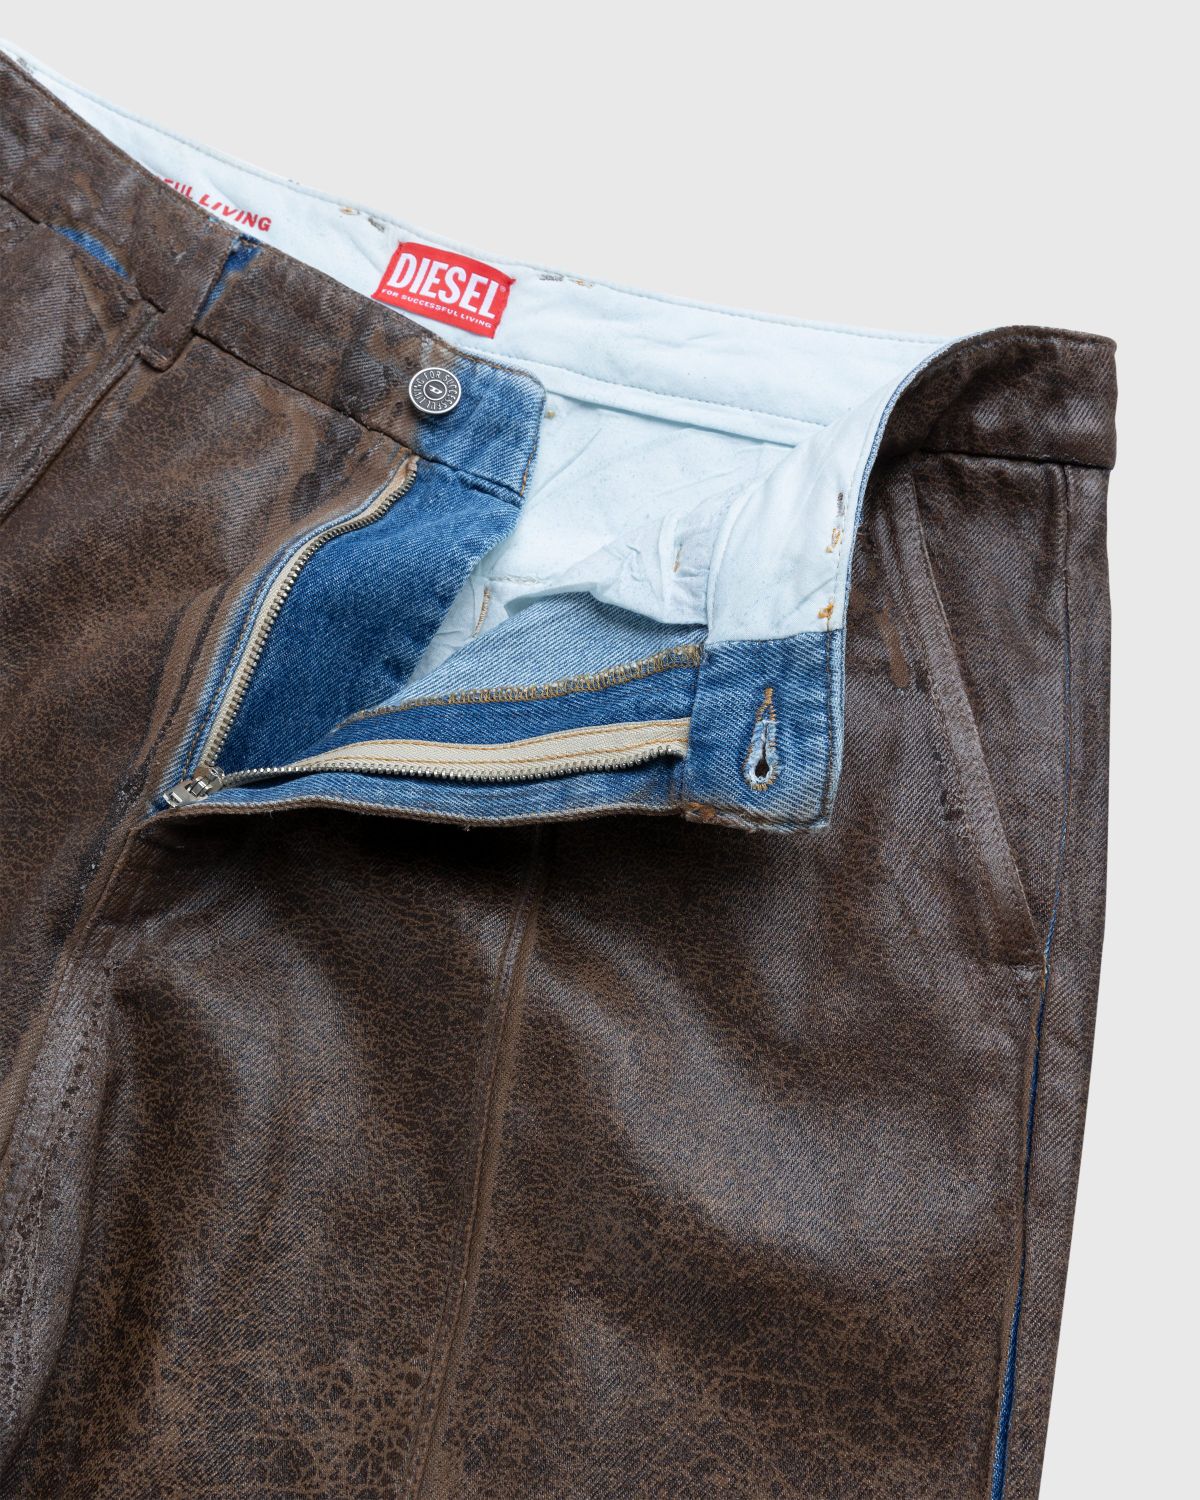 Diesel – Chino Work Jeans Aztec - Pants - Beige - Image 6